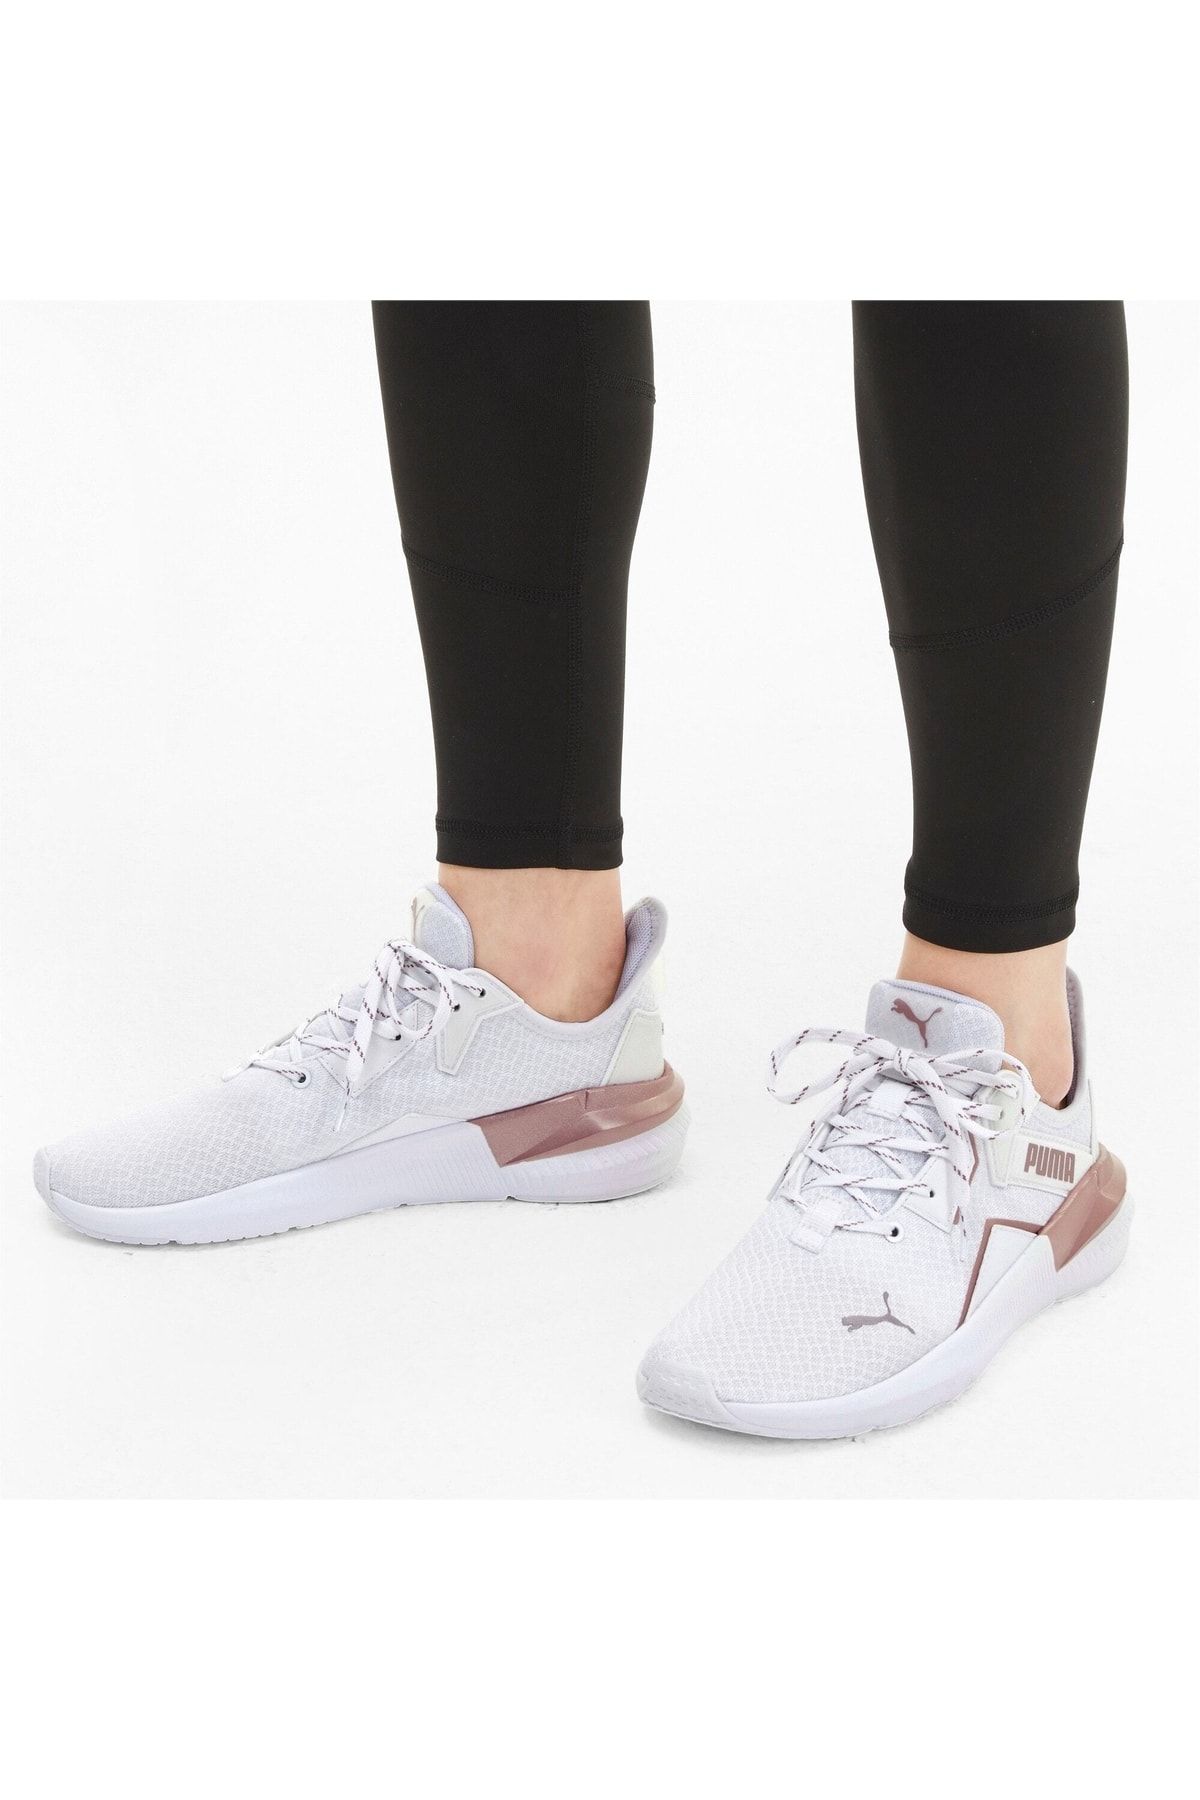 Puma PLATINUM METALLIC WNS Beyaz Kadın Sneaker Ayakkabı 101085331